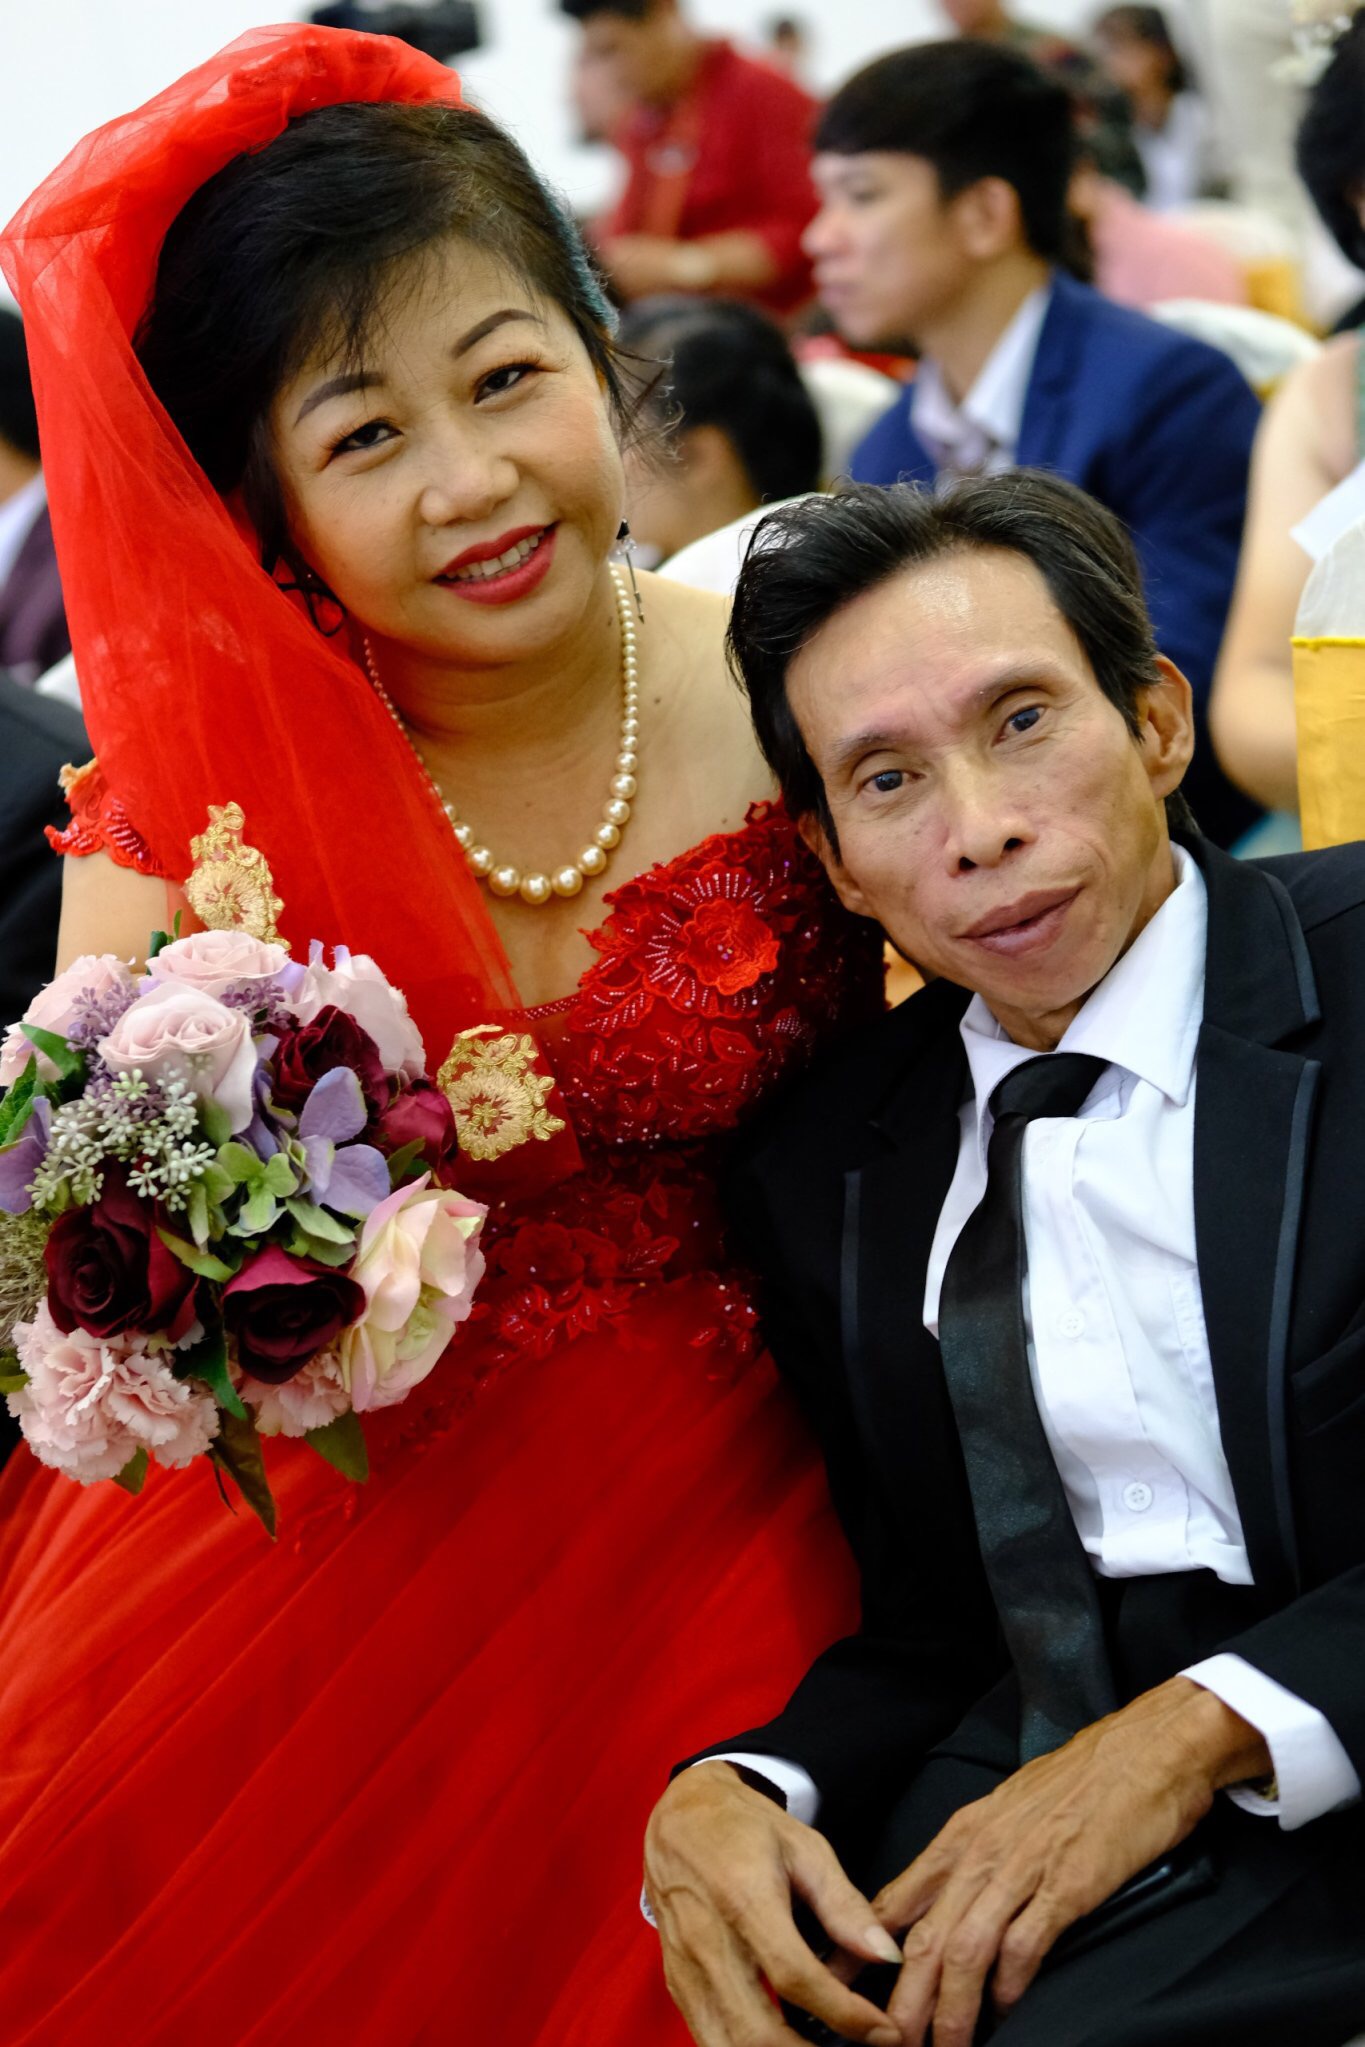 Nước mắt, nụ cười trong lễ cưới tập thể của 41 cặp đôi khuyết tật